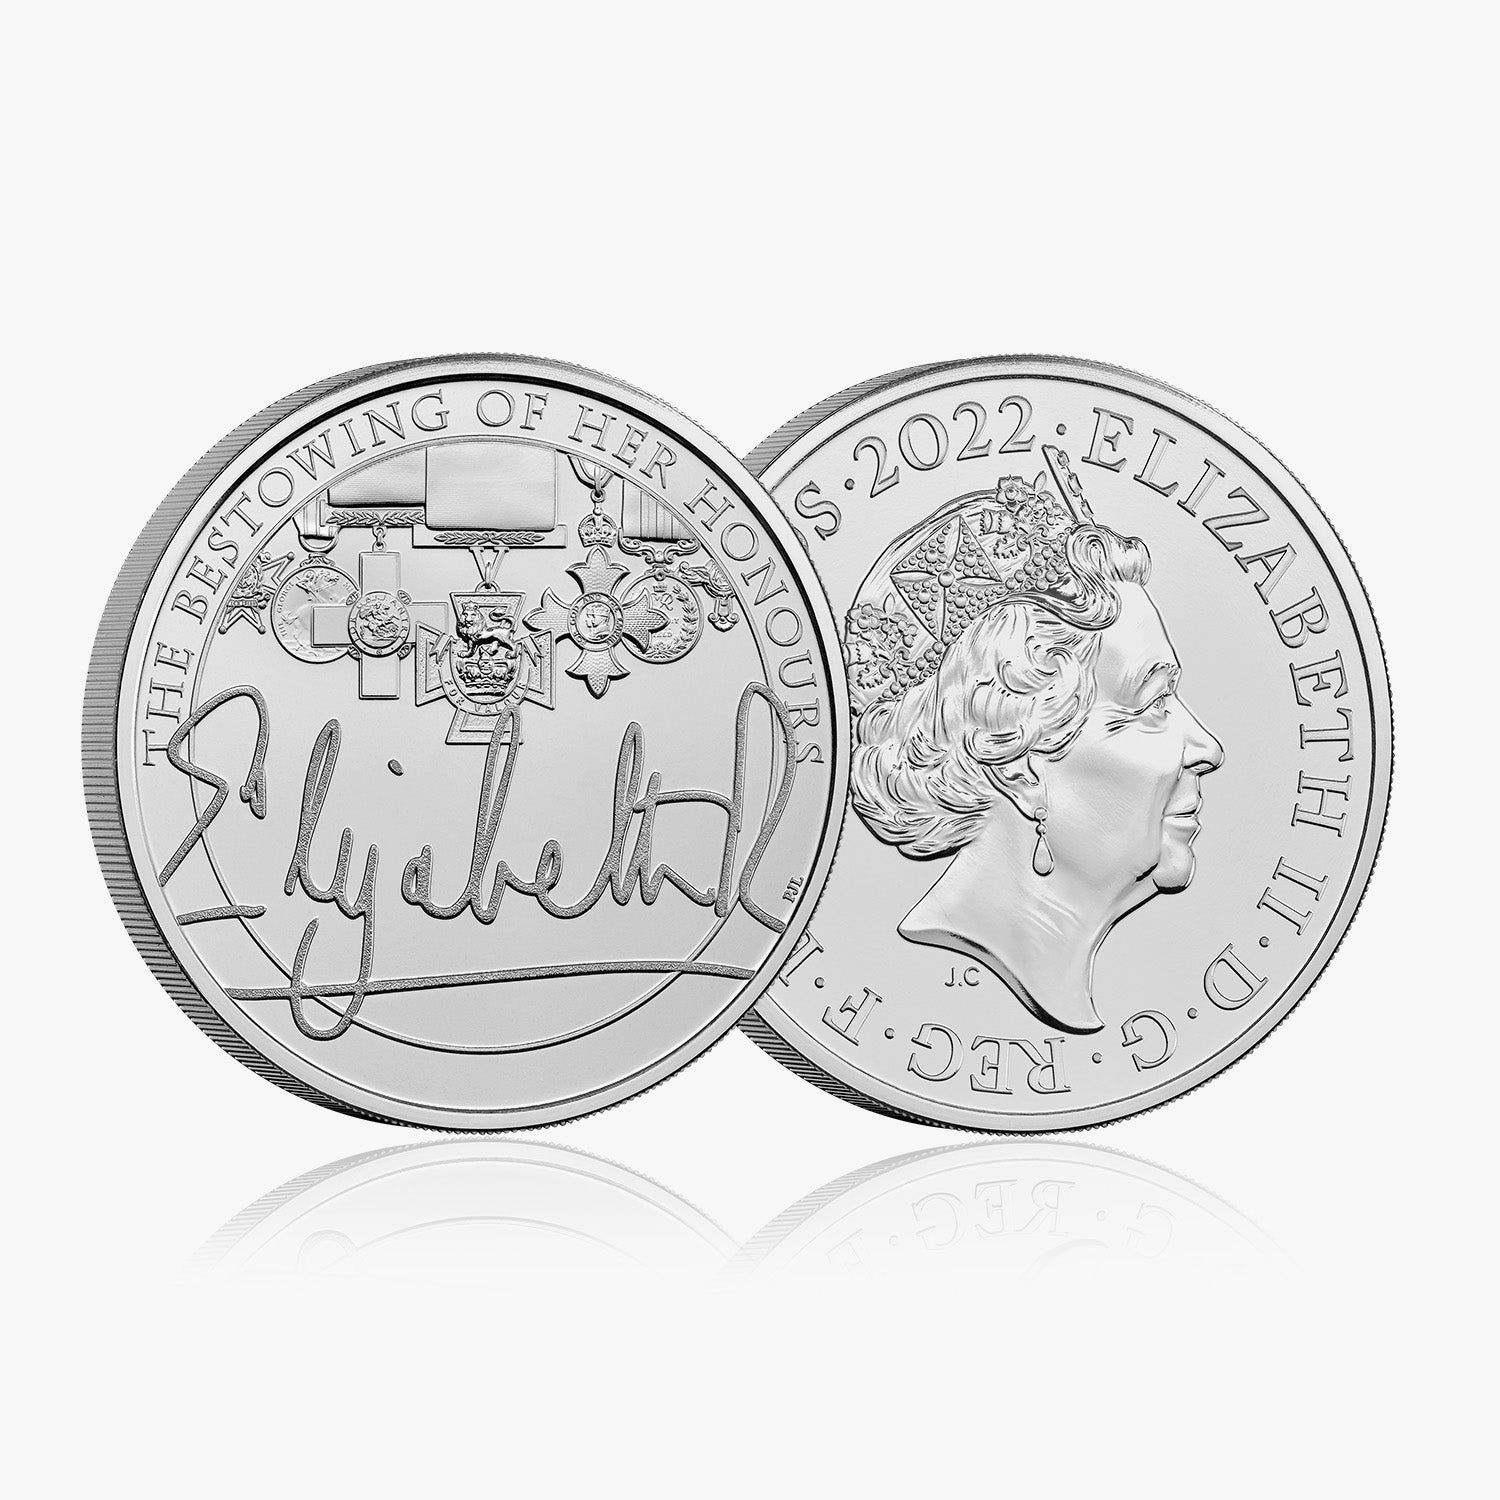 Honneurs et investitures du règne de la reine 2022 UK £ 5 BU Coin